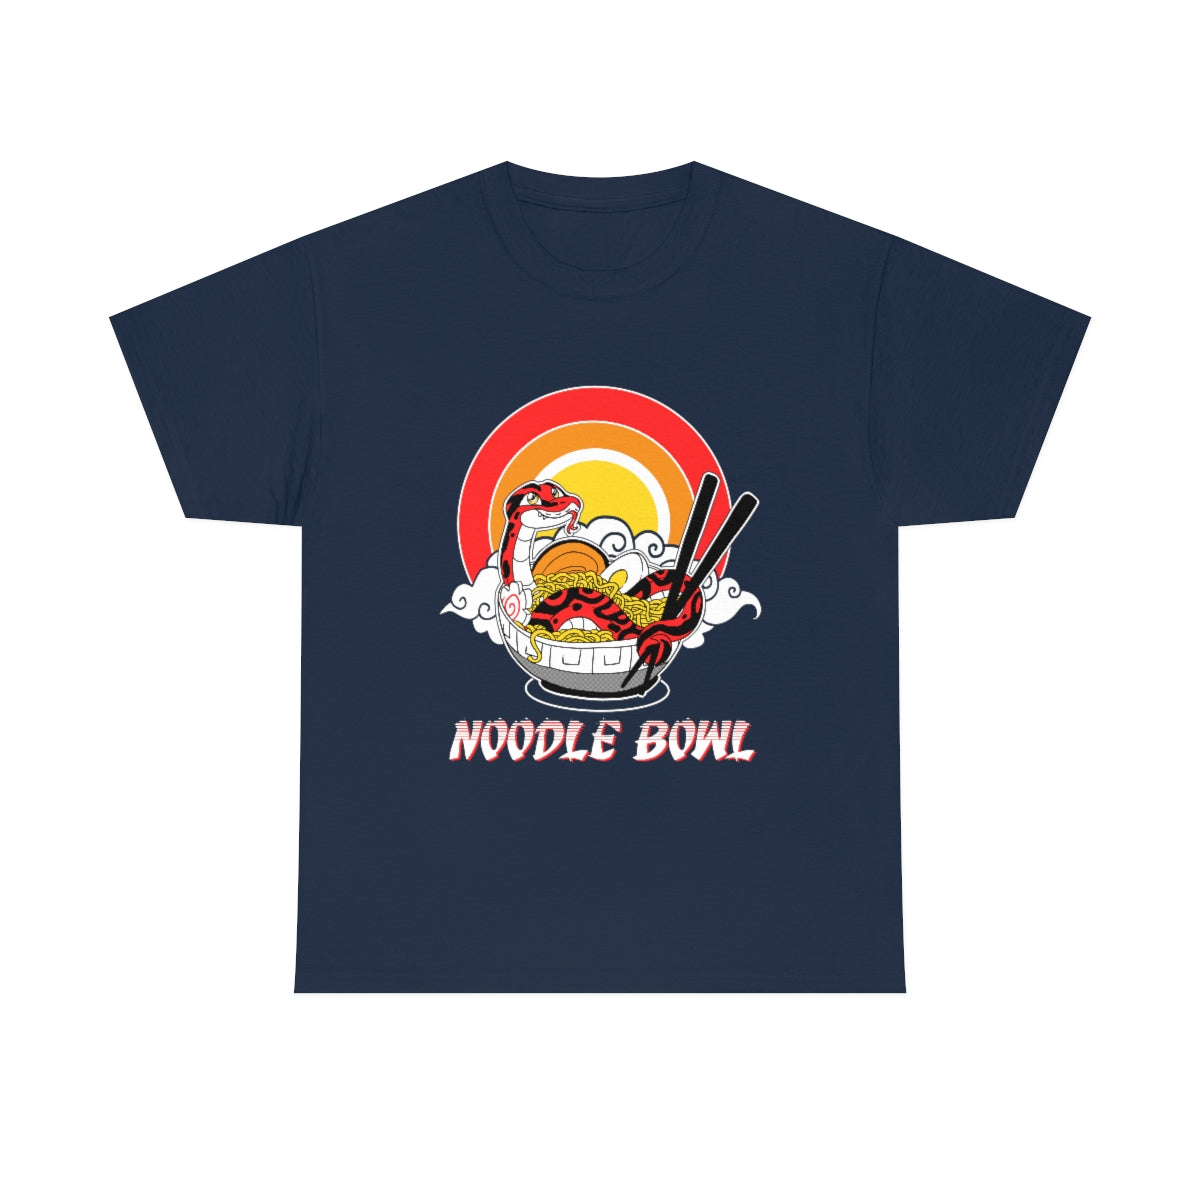 Noodle Bowl - T-Shirt T-Shirt Crunchy Crowe Navy Blue S 